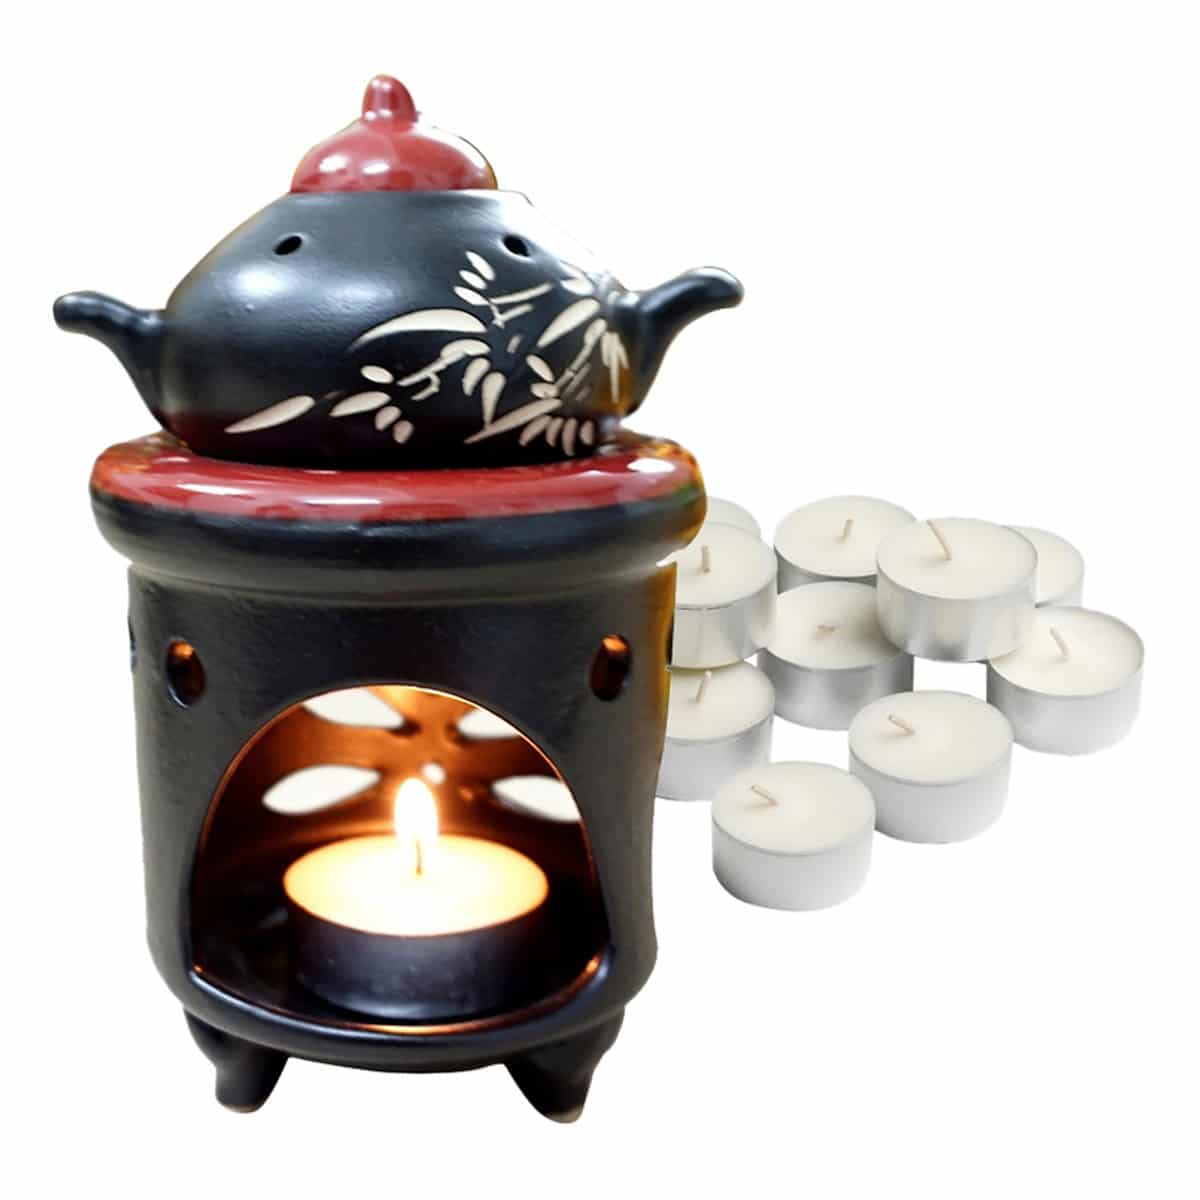 Đèn xông tinh dầu Bát Tràng nến hình ấm trà- Gốm đốt tinh dầu bằng nến xông phòng khử mùi, thơm như Spa- Dễ di chuyển, tiện sử dụng